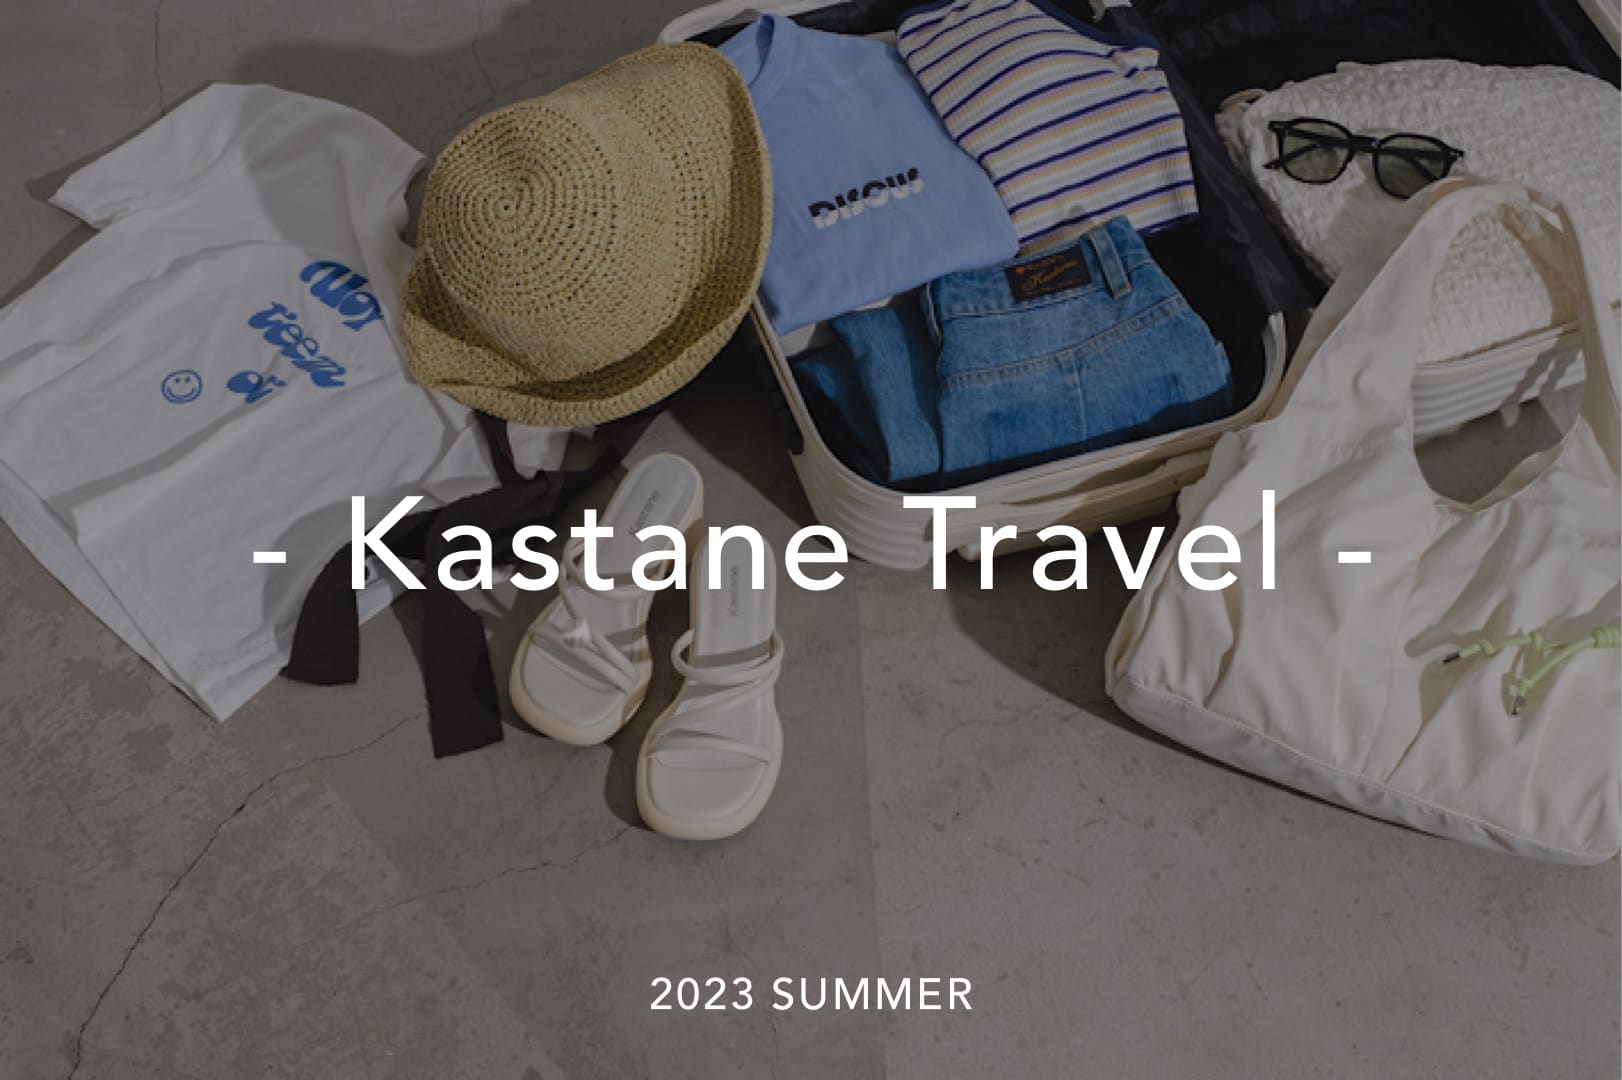 Kastane - Kastane travel -